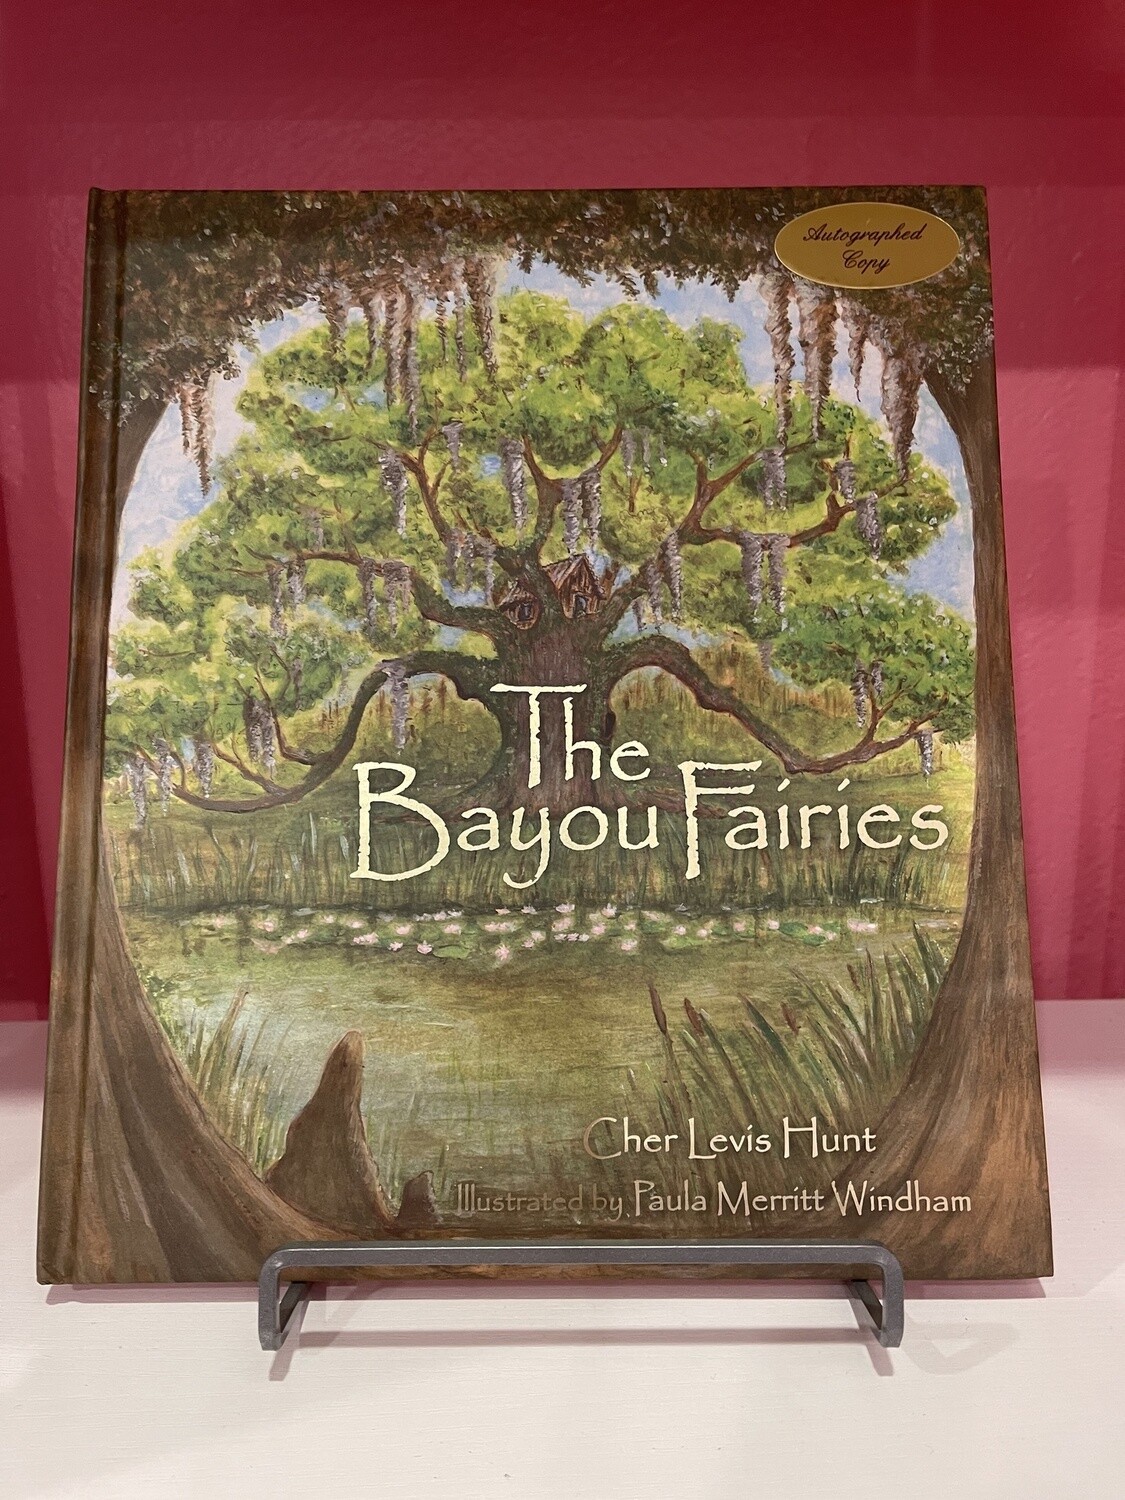 The Bayou Fairies